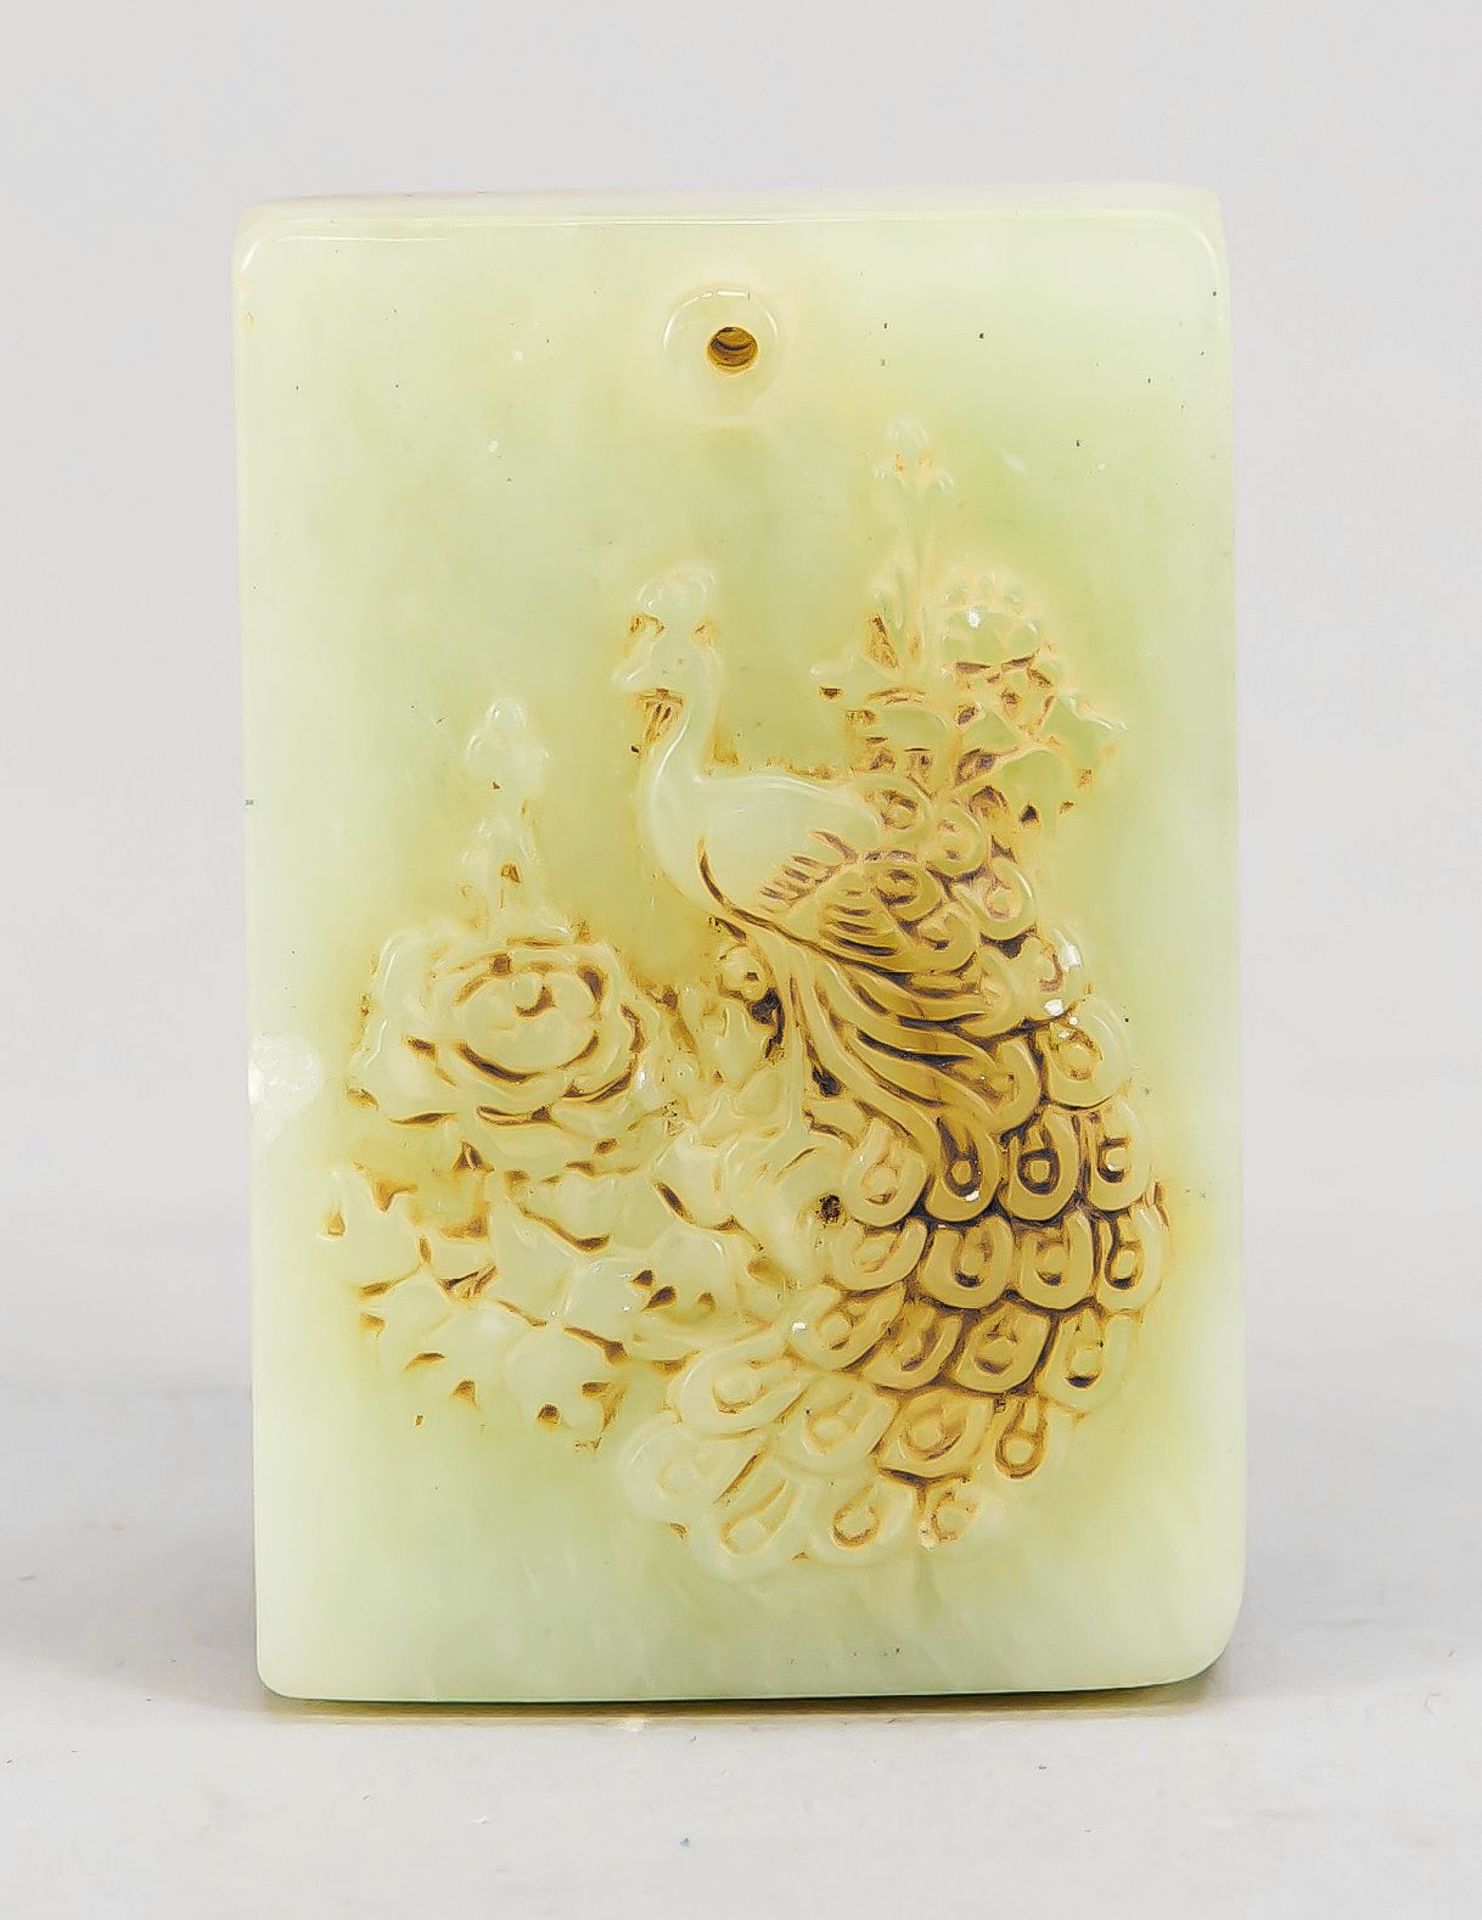 Jade-Pendentif, China, 19. Jh. oder früher? Seladonfarbene Jade, beidseitig beschnitzt mitPfau - Bild 2 aus 2